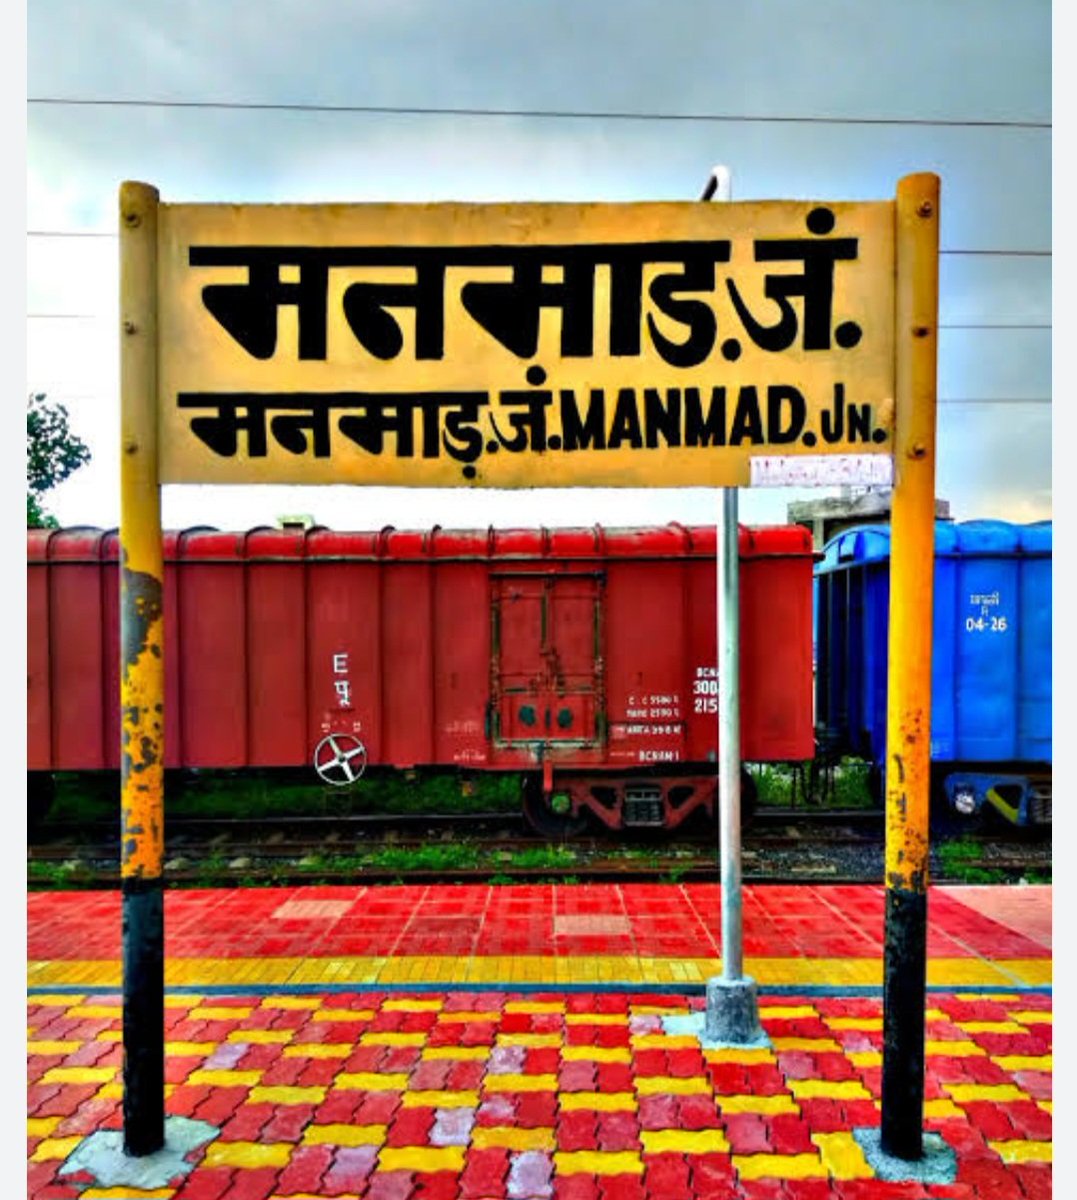 @NWRailways  

New train Shirdi Sai Nagar Bikaner

Manmad.   Nashik Road. Igatpuri

Kalyan.  Vasai Road.  Surat 

Hokar Sidhi line Jaati Hai

Jalgaon hokar FERA padta hai

Shirdi Sai Nagar to Bikaner

Manmad  Nashik. Kalyan hokar koi train Nahin Jaati Hai

New train Shuru kijiye